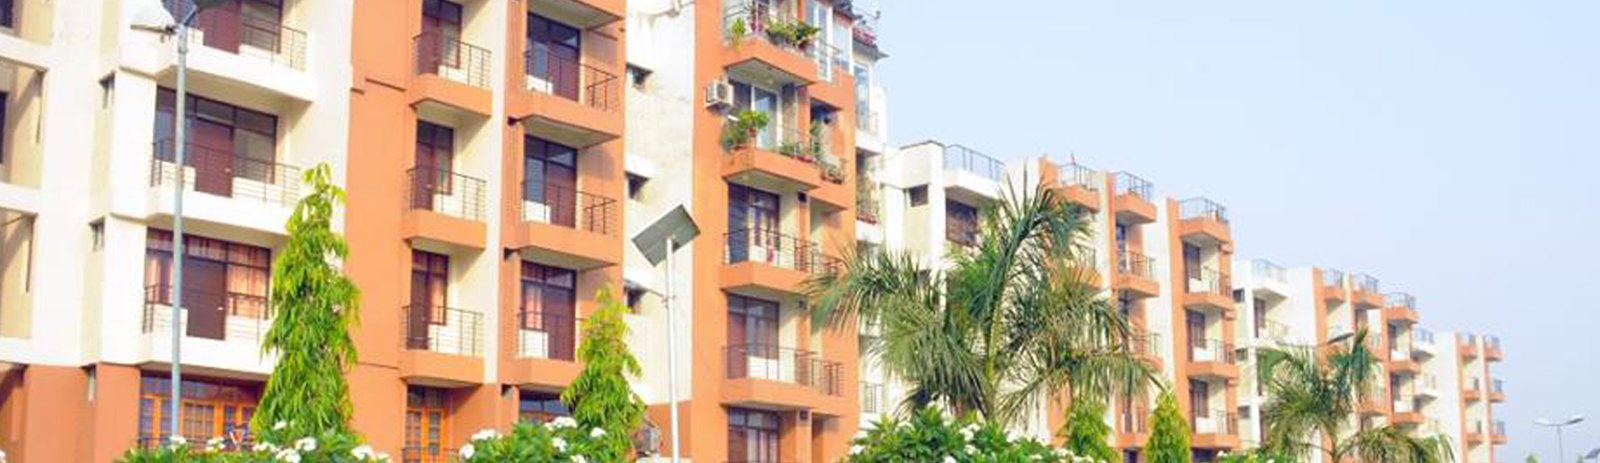 flats in haridwar road dehradun